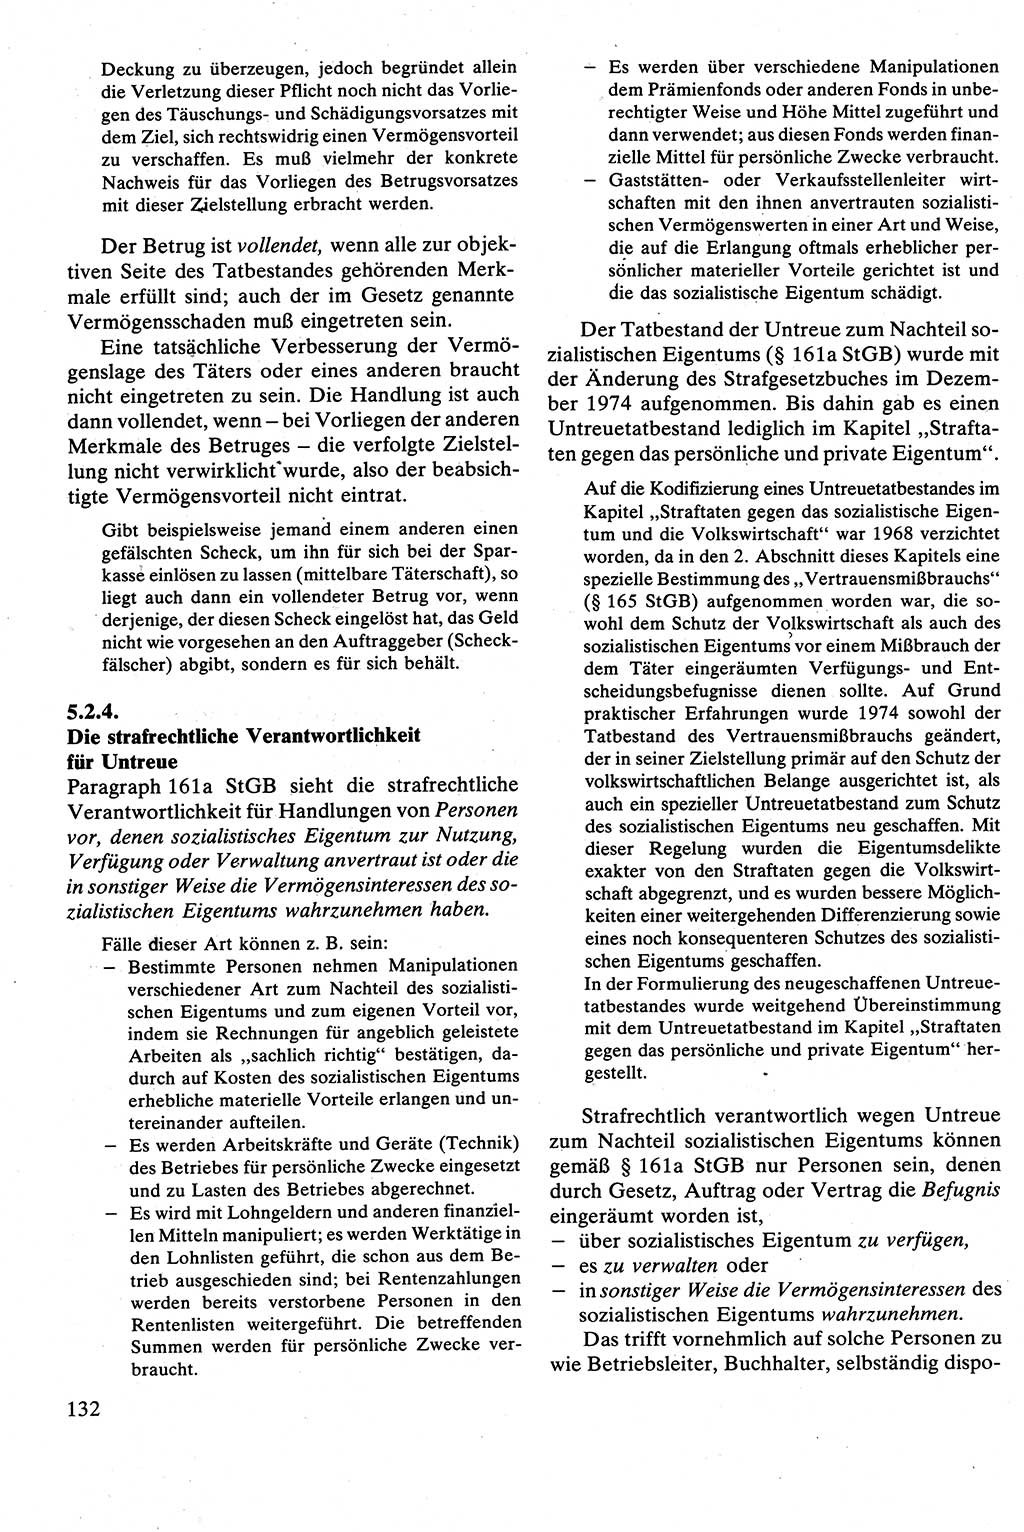 Strafrecht [Deutsche Demokratische Republik (DDR)], Besonderer Teil, Lehrbuch 1981, Seite 132 (Strafr. DDR BT Lb. 1981, S. 132)